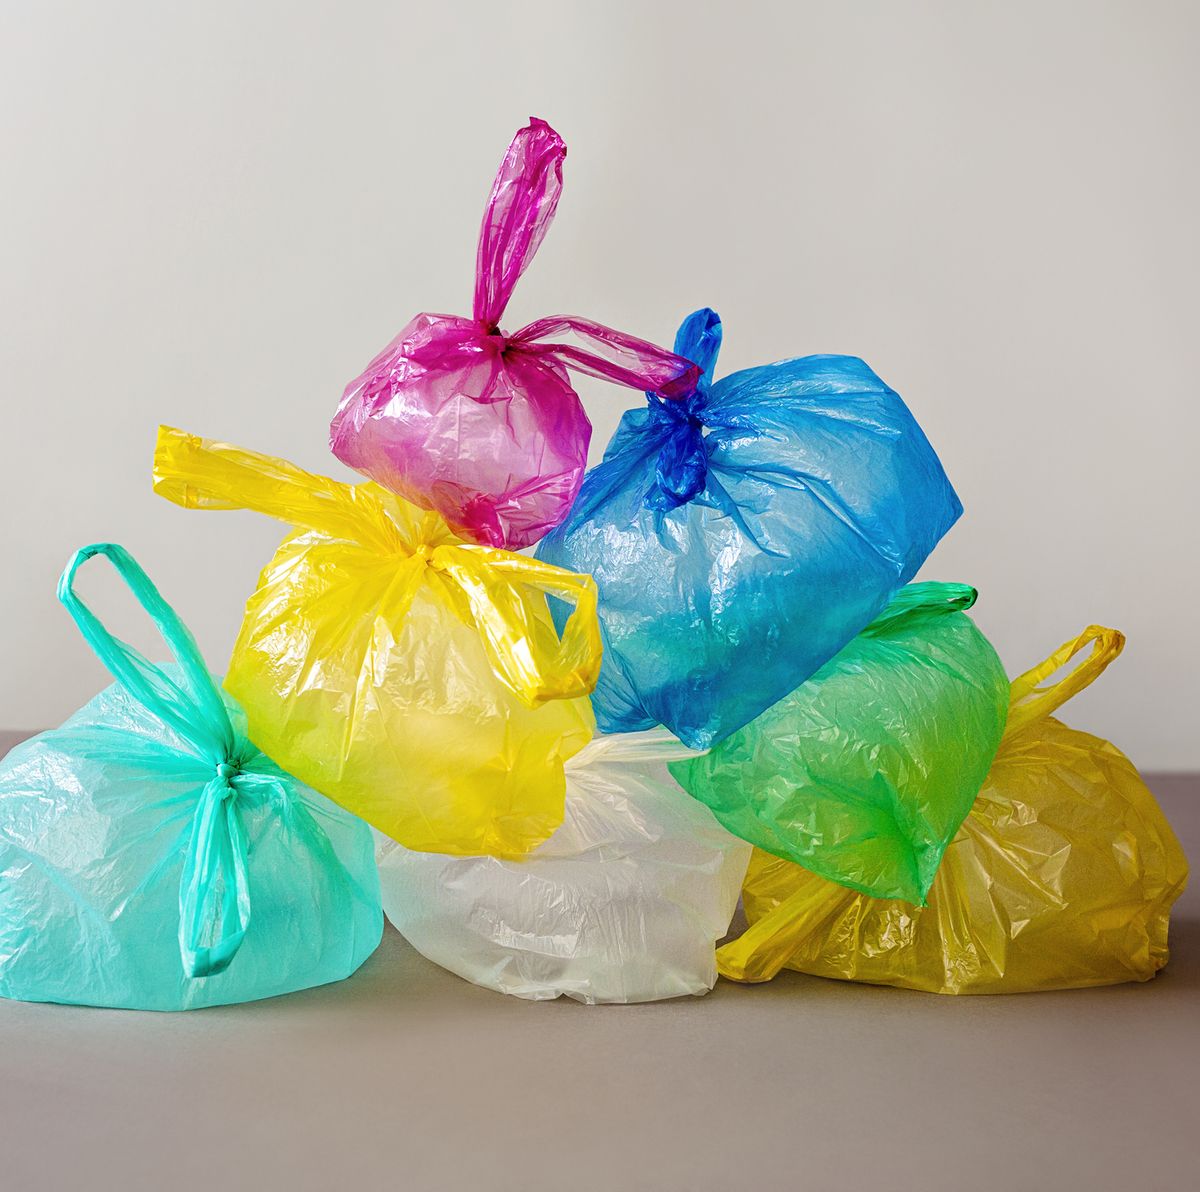 Cómo hacer bolsas para la compra a ganchillo de bolsas de plástico